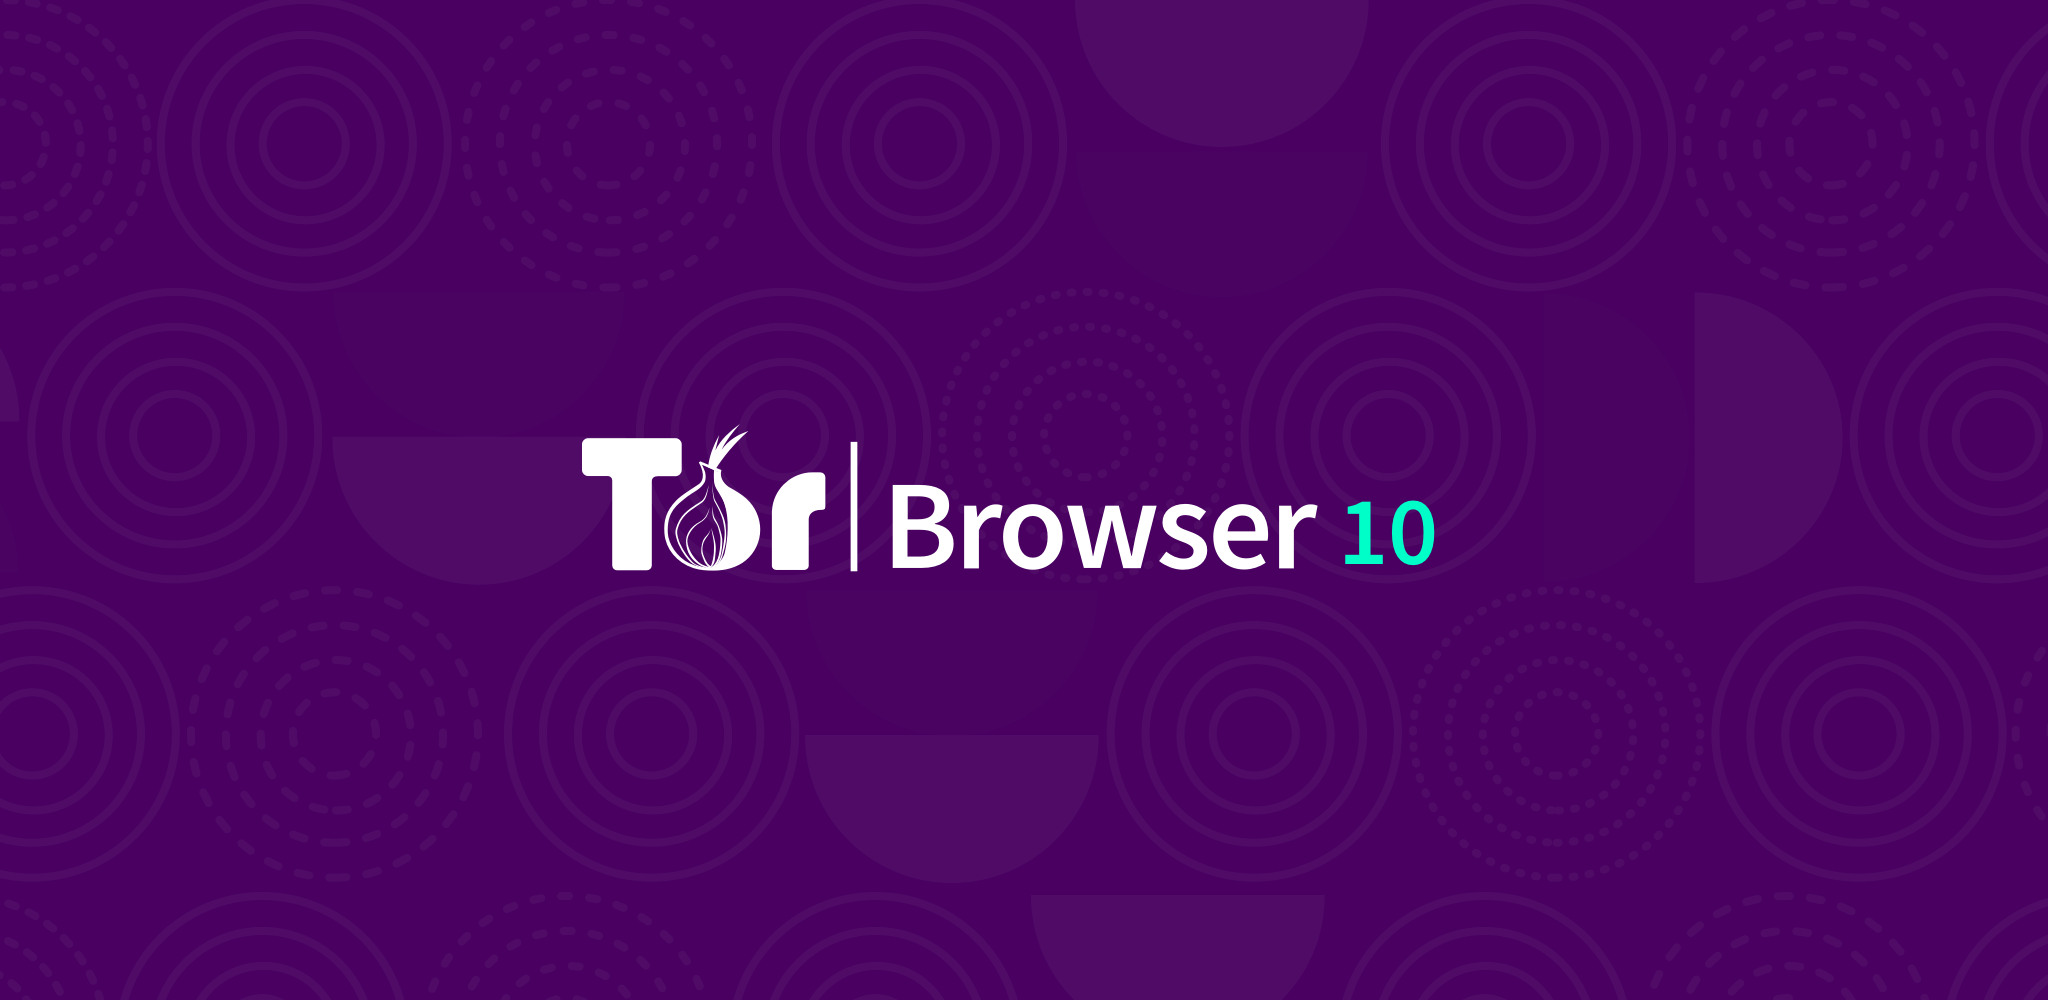 Tor image browser megaruzxpnew4af тор браузер для андроид скачать торрент mega вход